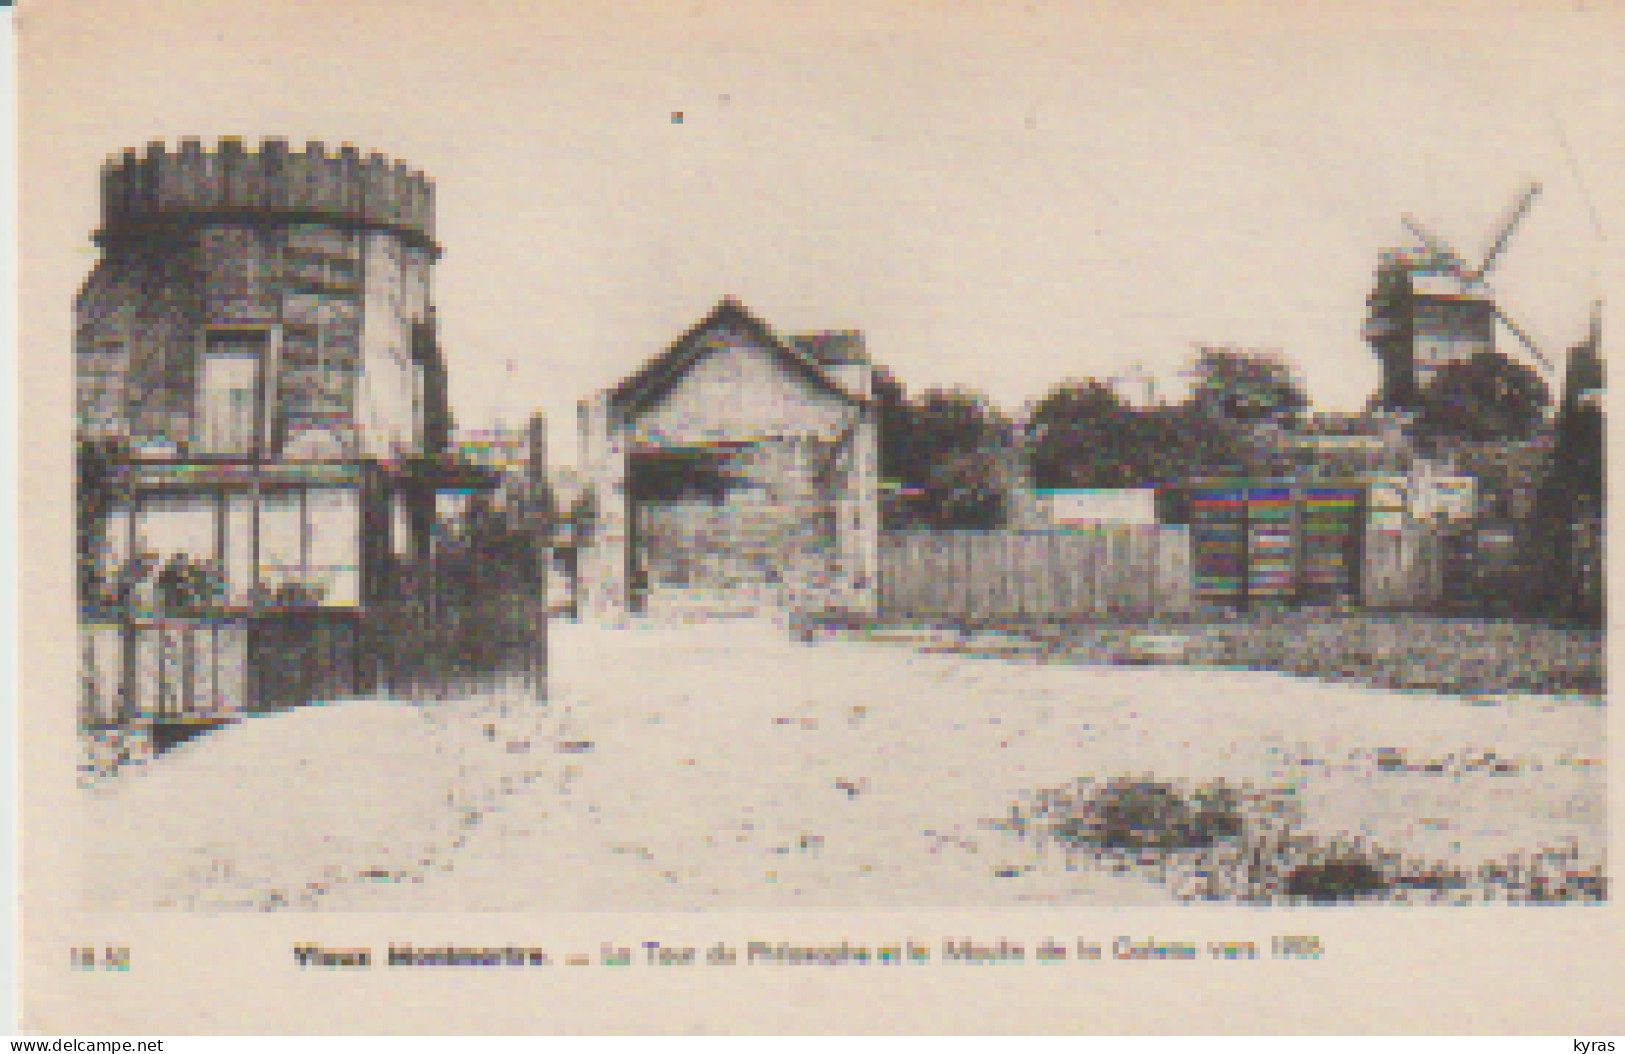 (75) PARIS. VIEUX MONTMARTRE. La Tour Du Philosophe Et Le Moulin De La Galette Vers 1905 - District 18